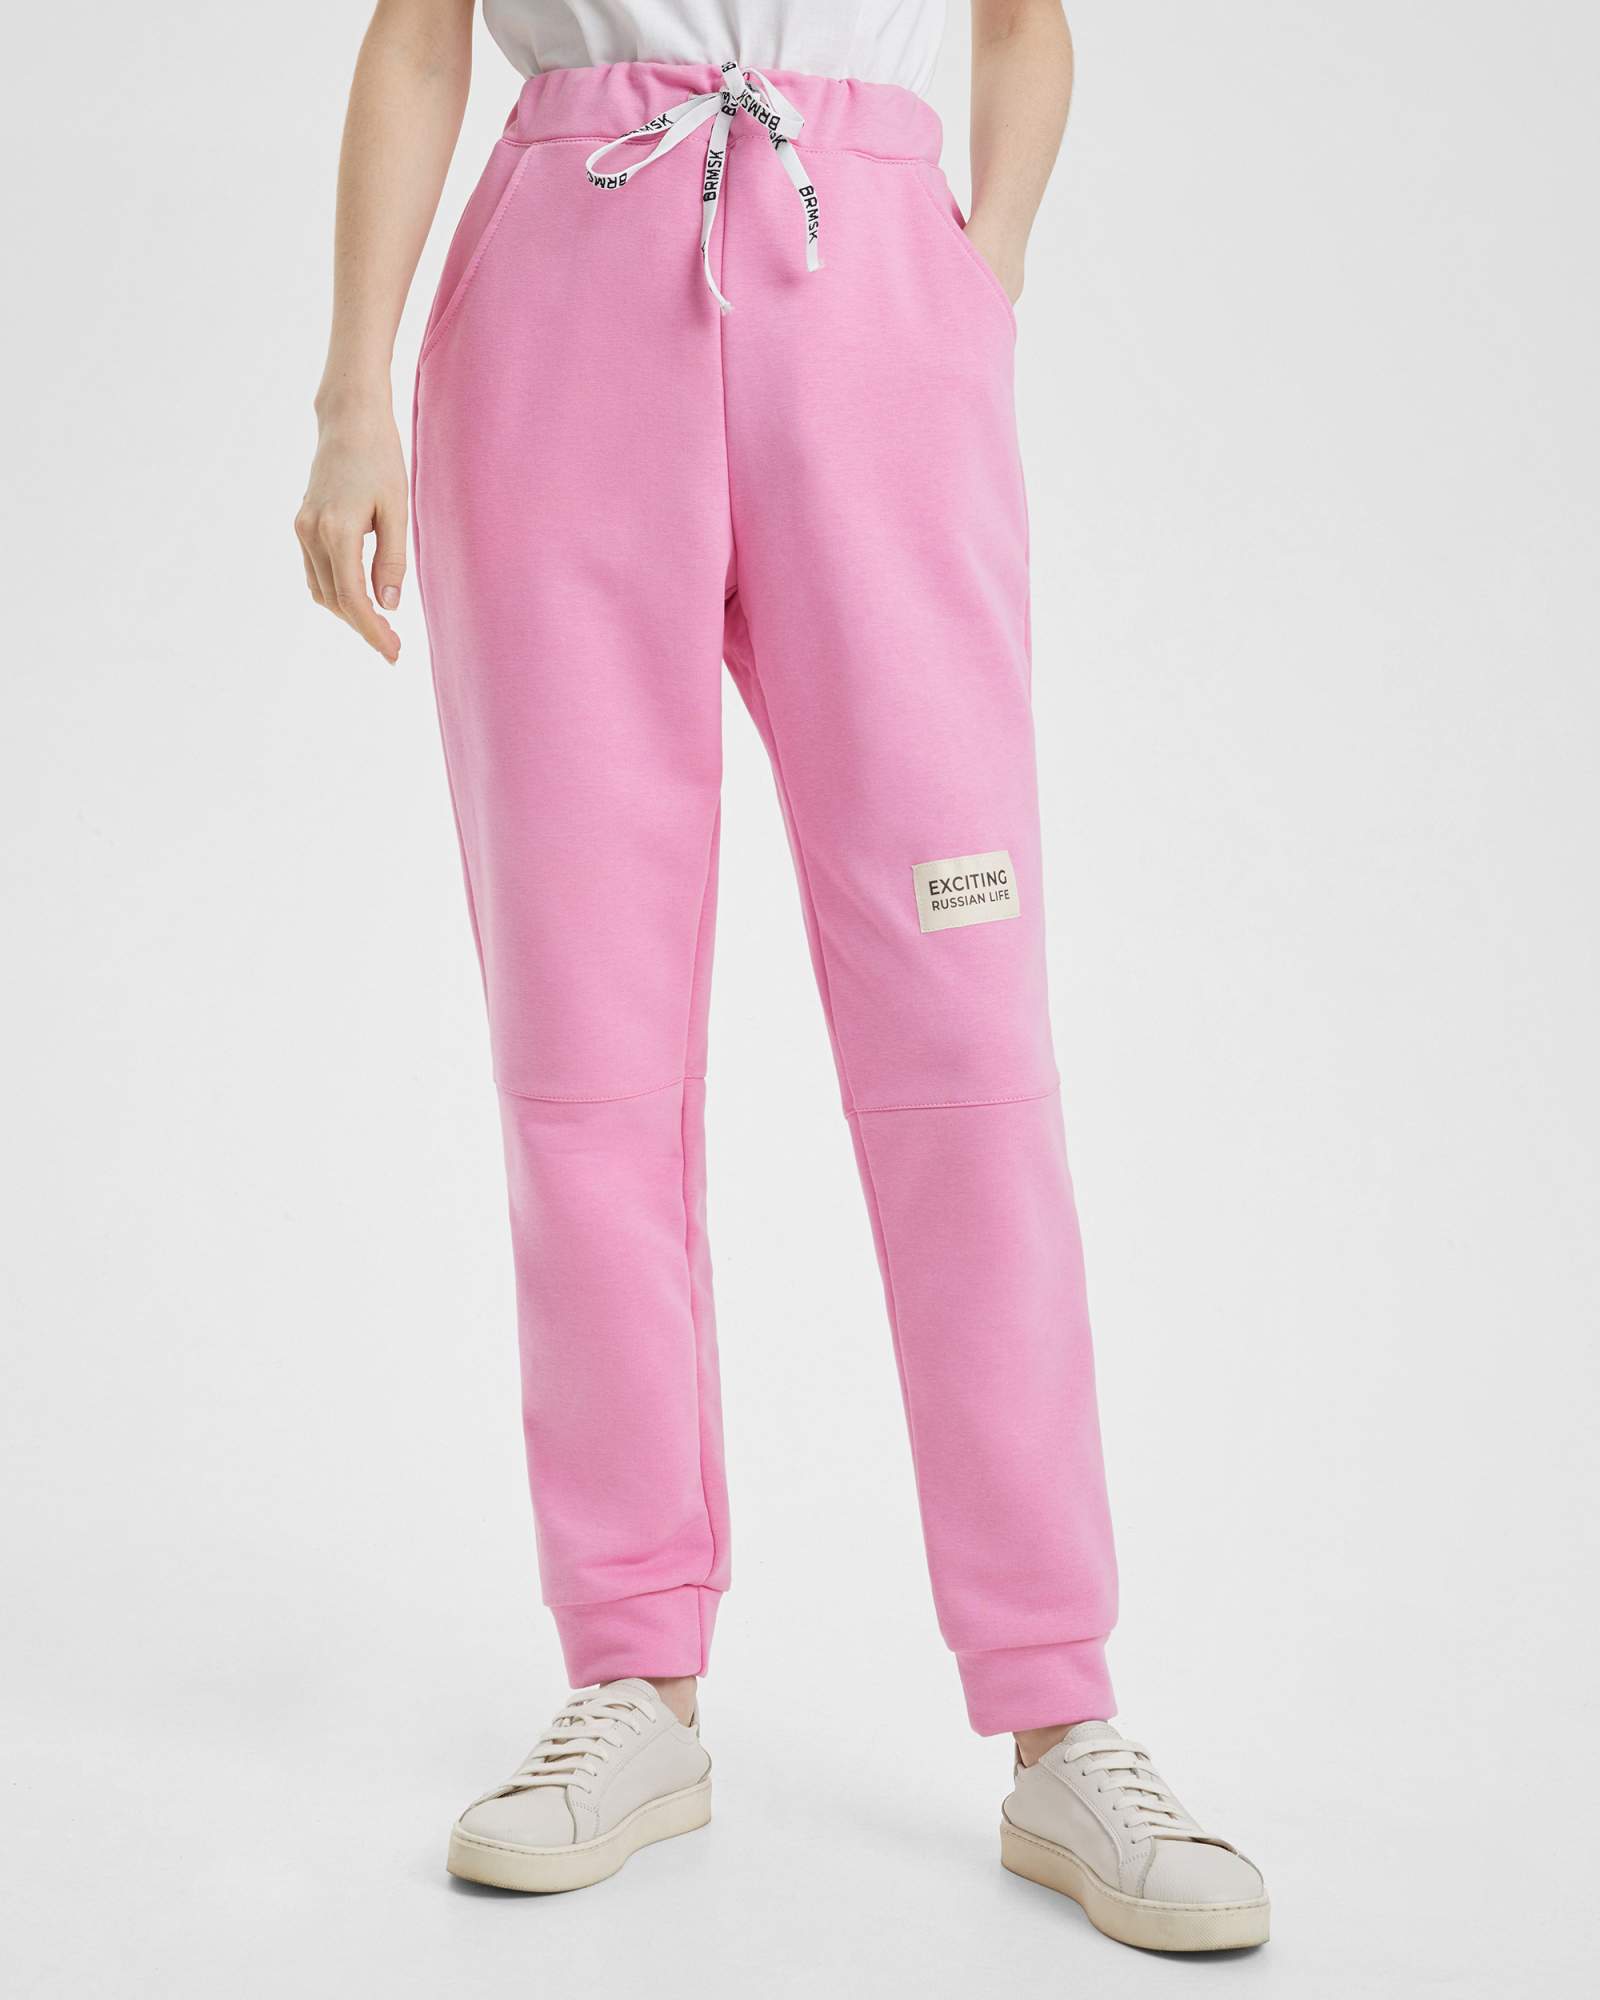 Спортивные брюки женские BARMARISKA с шевроном розовые 56-58 RU